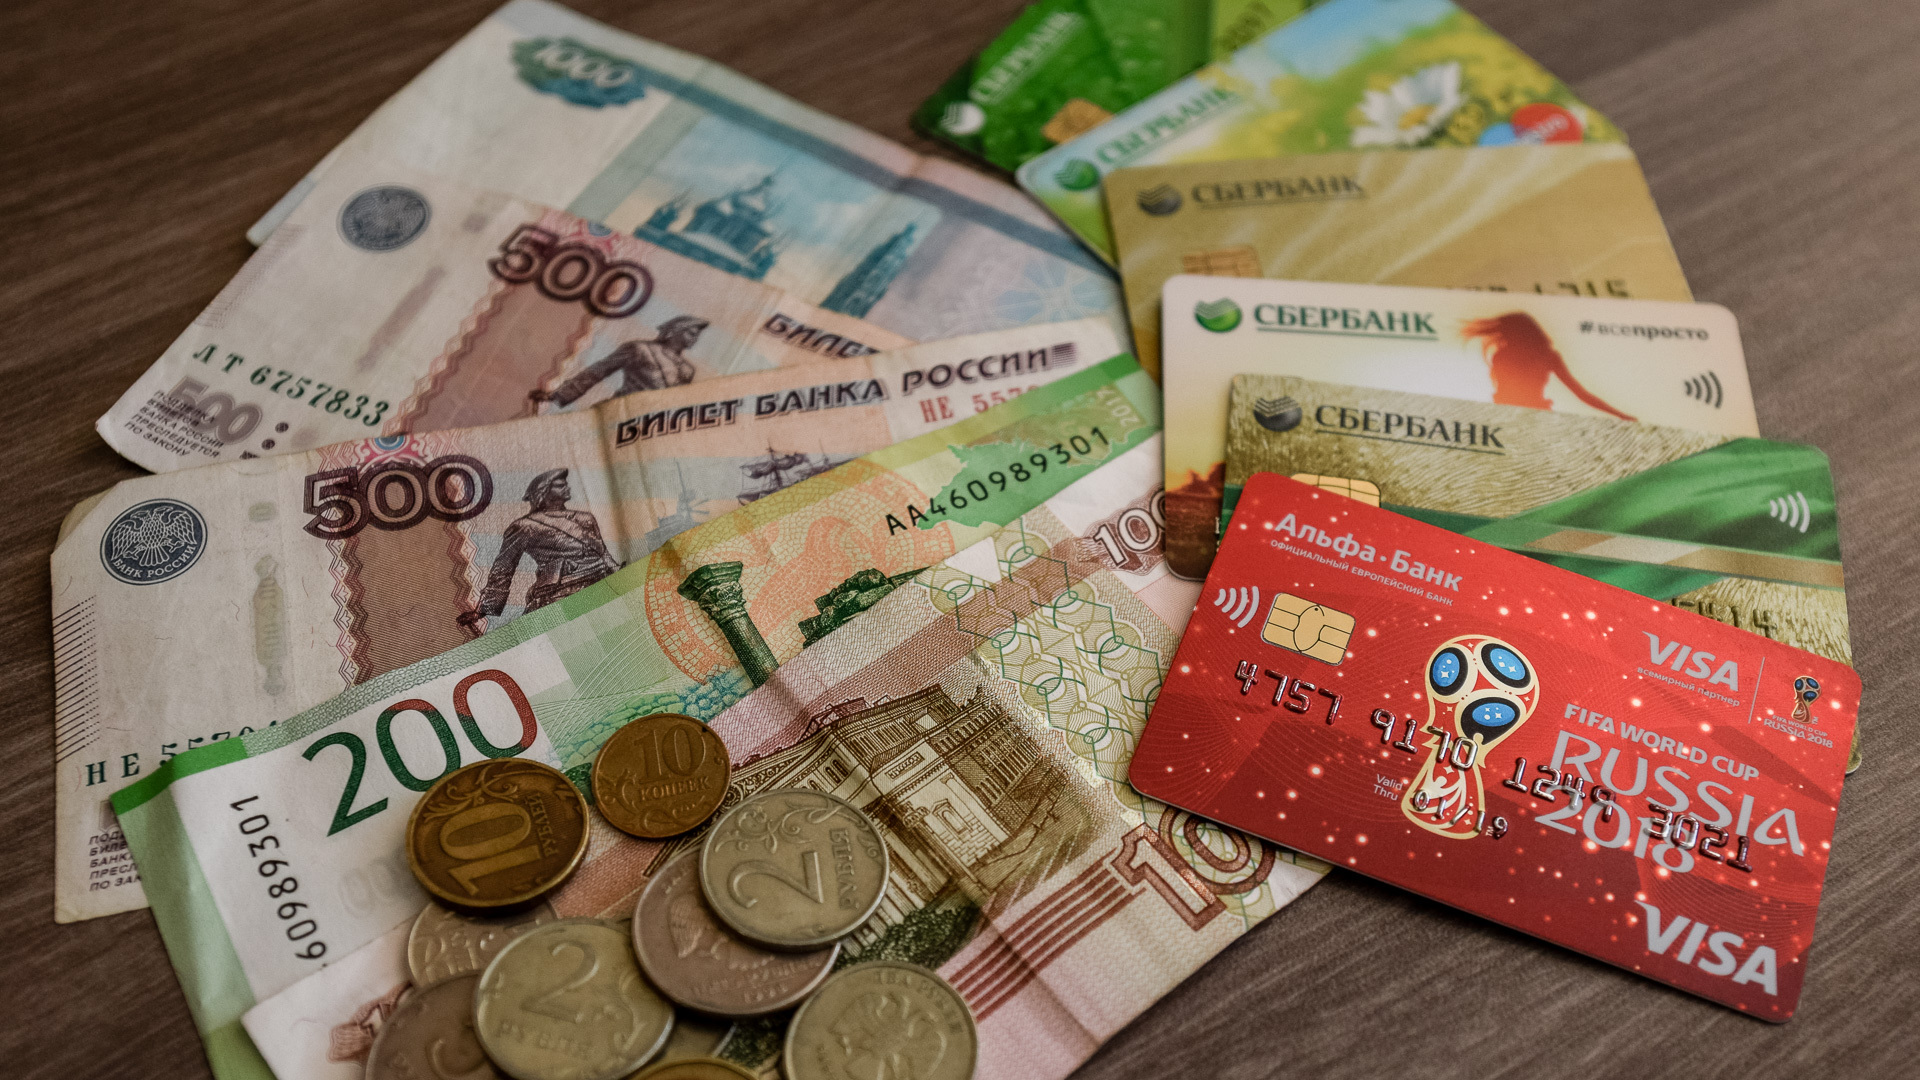 «Главный прокурор» и «банковский работник» лишили омских пенсионеров 400 тыс рублей